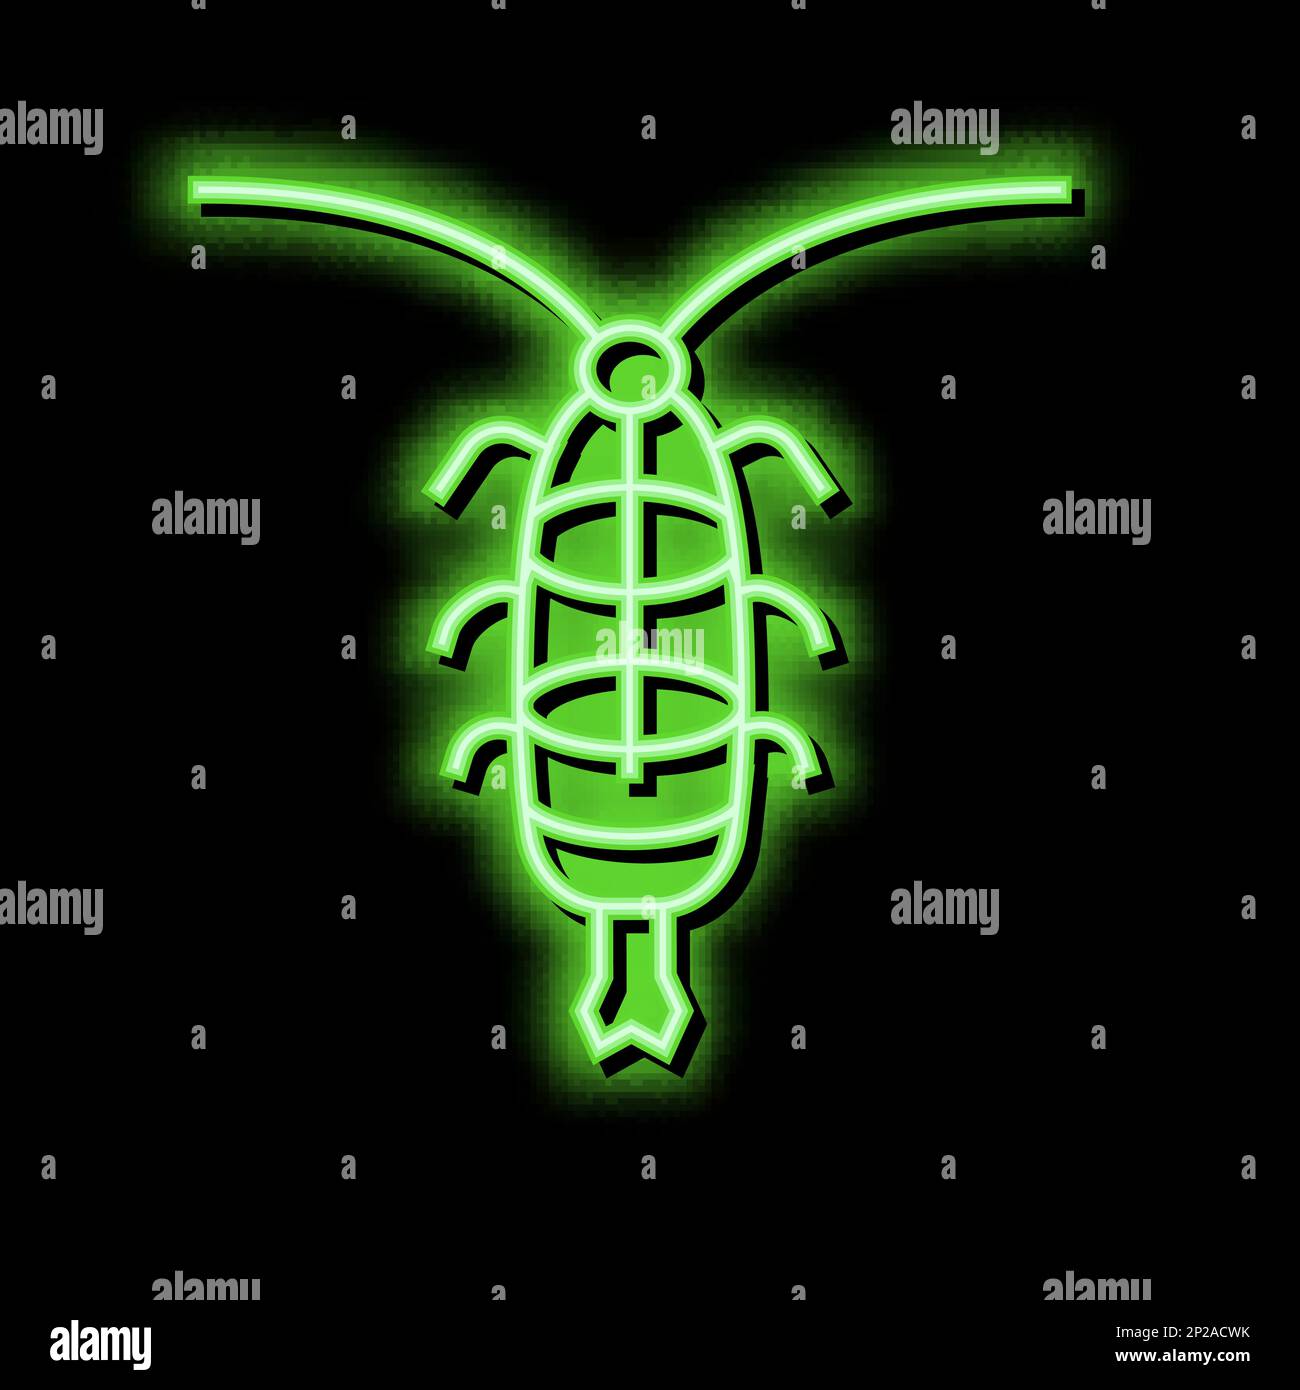 zooplankton ocean neon glow icon illustration Stock Vector